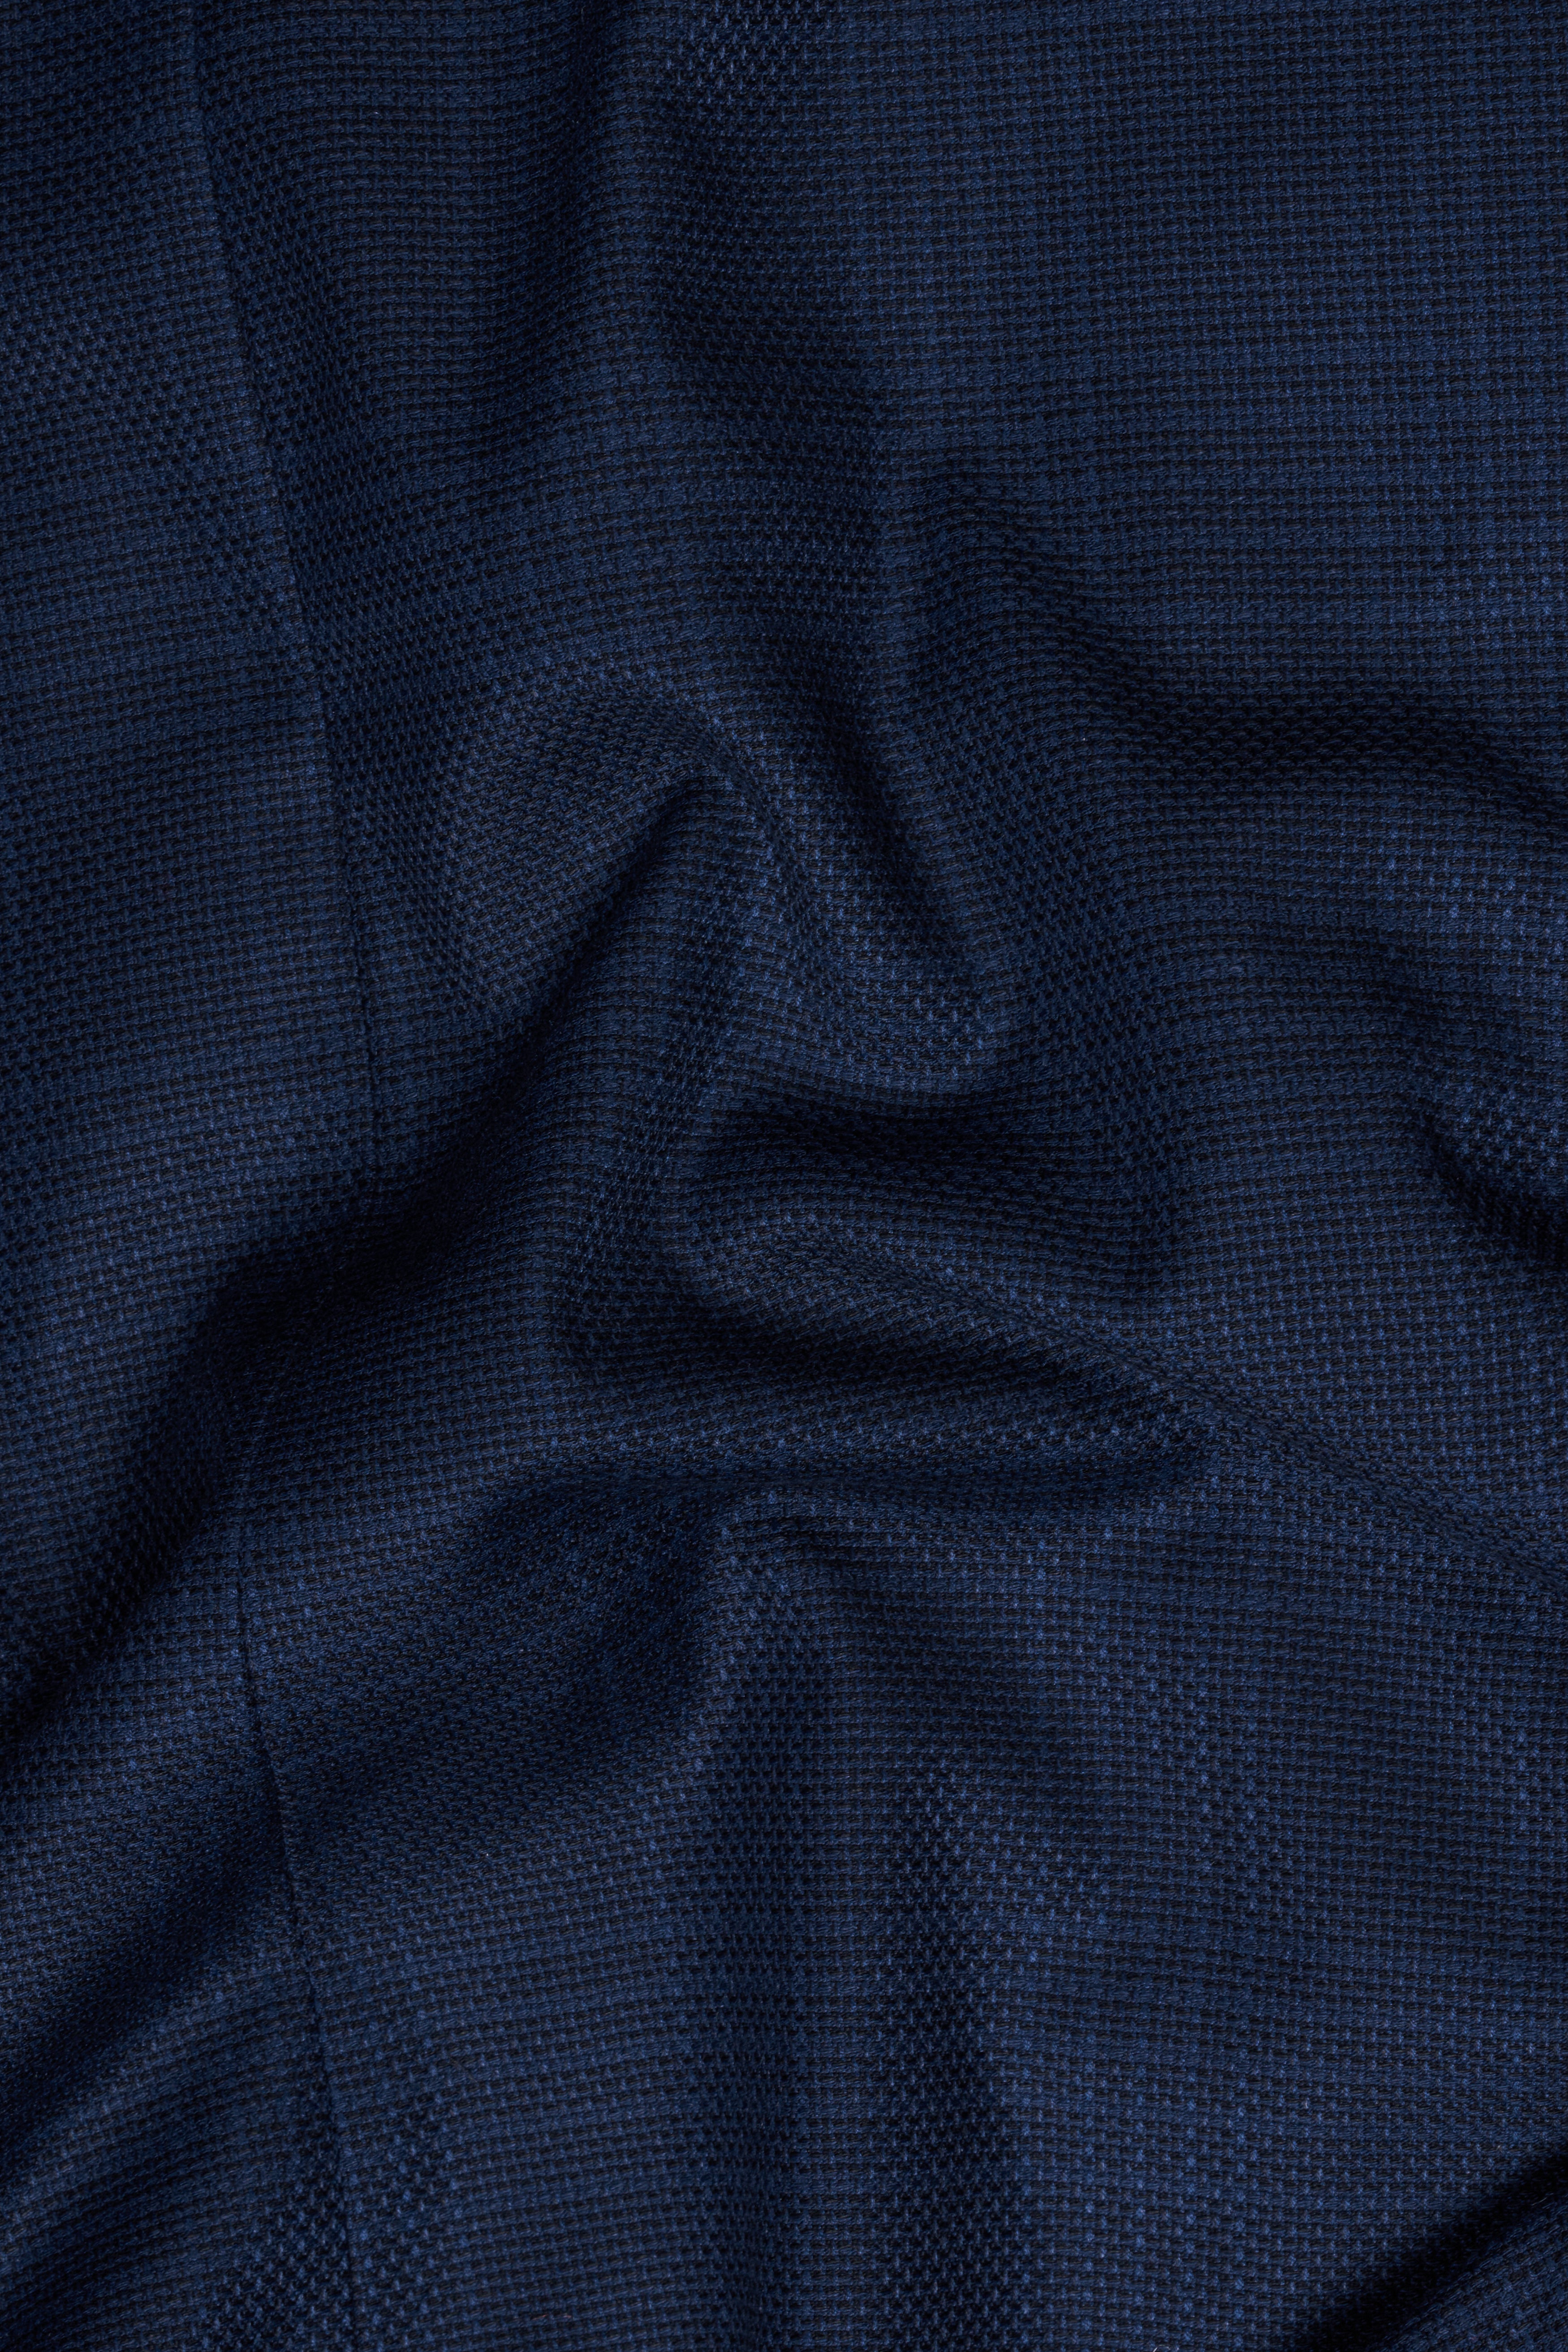 Prussian Blue Wool Rich Pant T2816-28, T2816-30, T2816-32, T2816-34, T2816-36, T2816-38, T2816-40, T2816-42, T2816-44